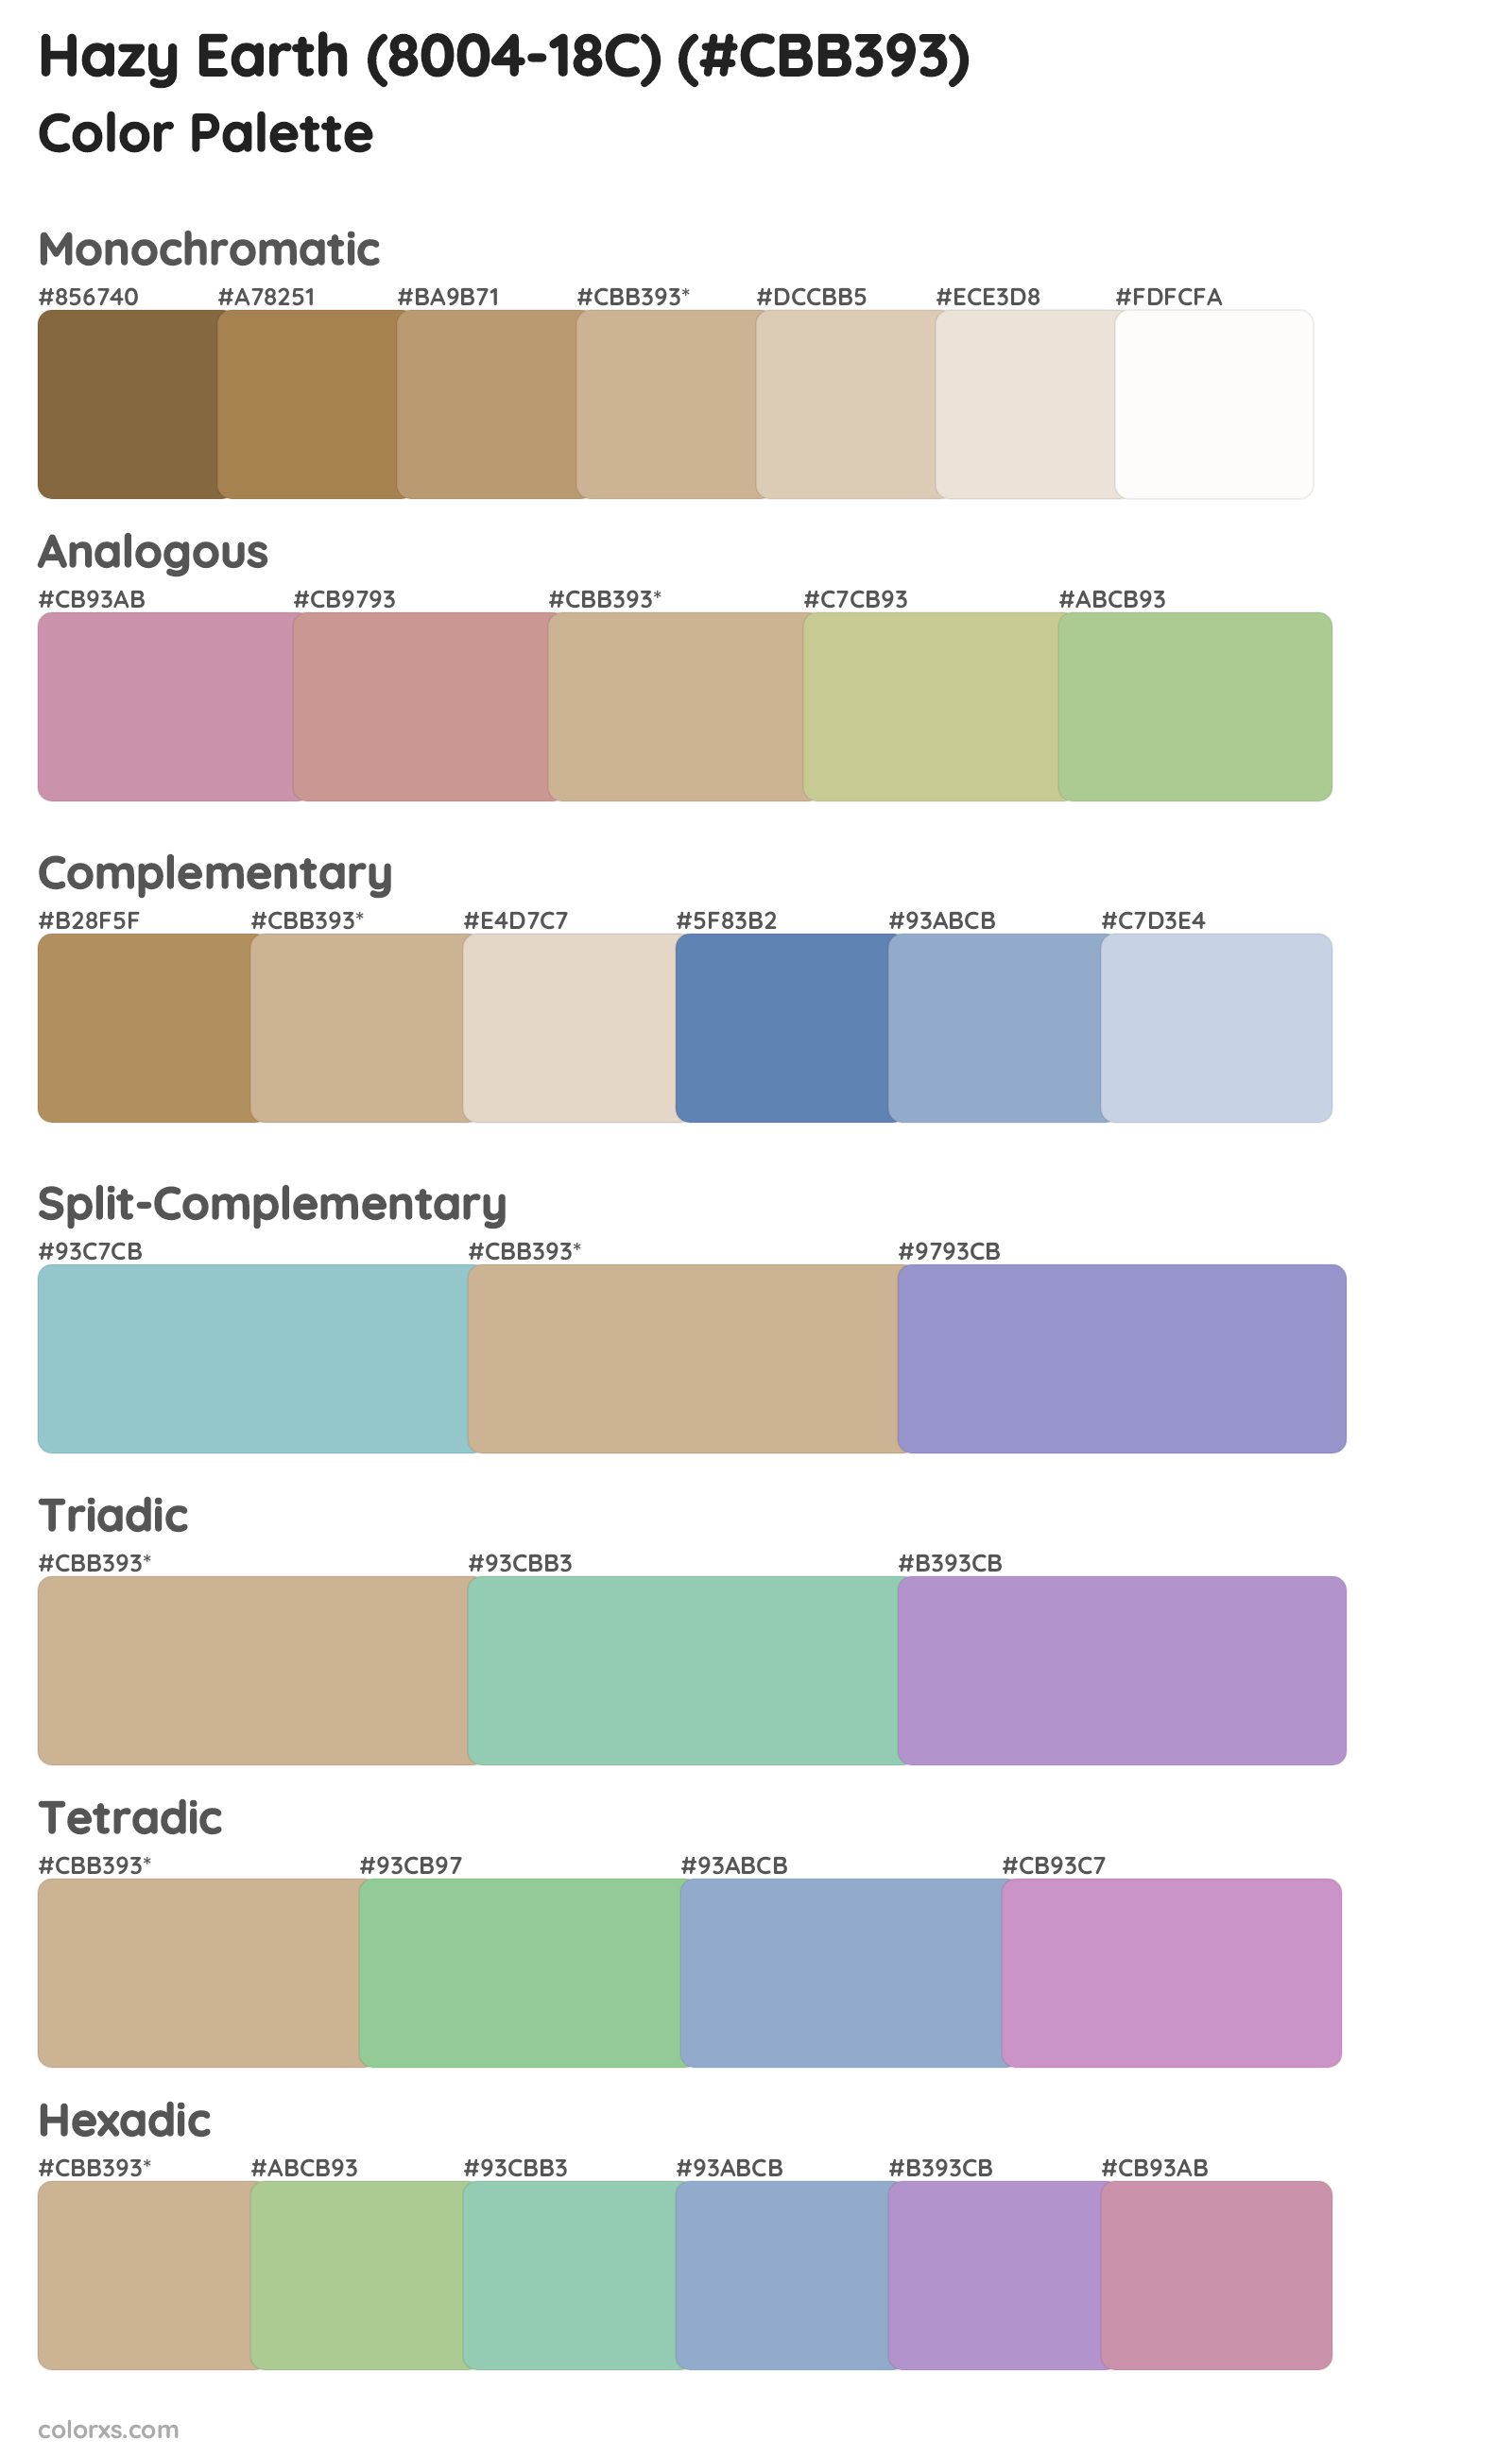 Hazy Earth (8004-18C) Color Scheme Palettes